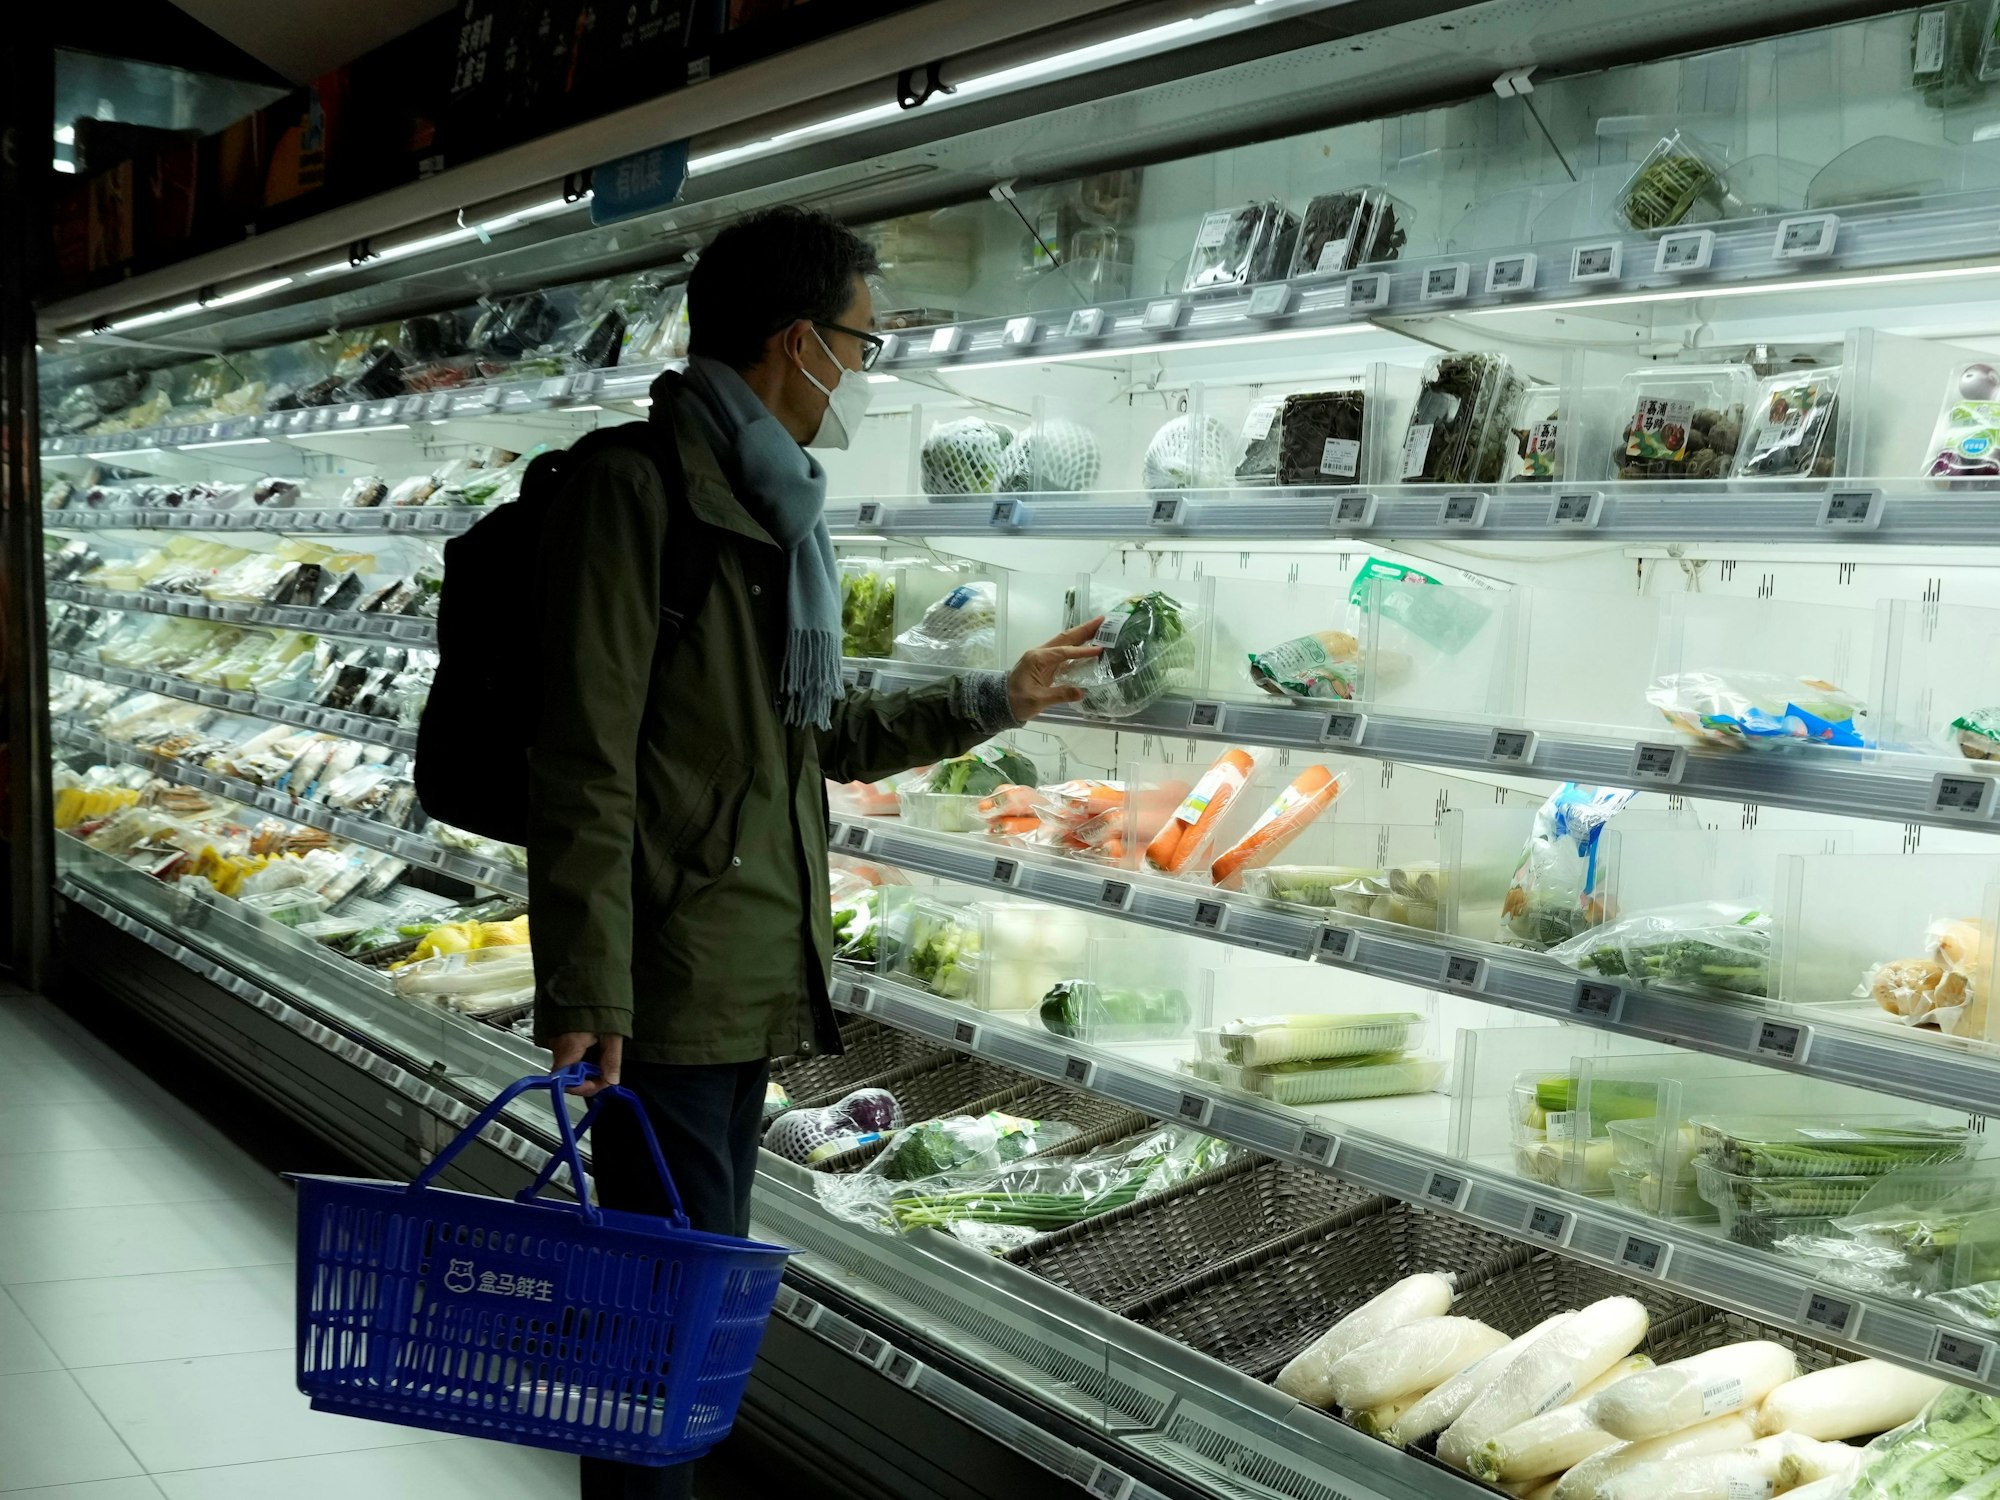 Beim Einkaufen im Supermarkt (hier ein Symbolfoto) auf Mallorca trauen Kundinnen und Kunden derzeit ihren Augen kaum.